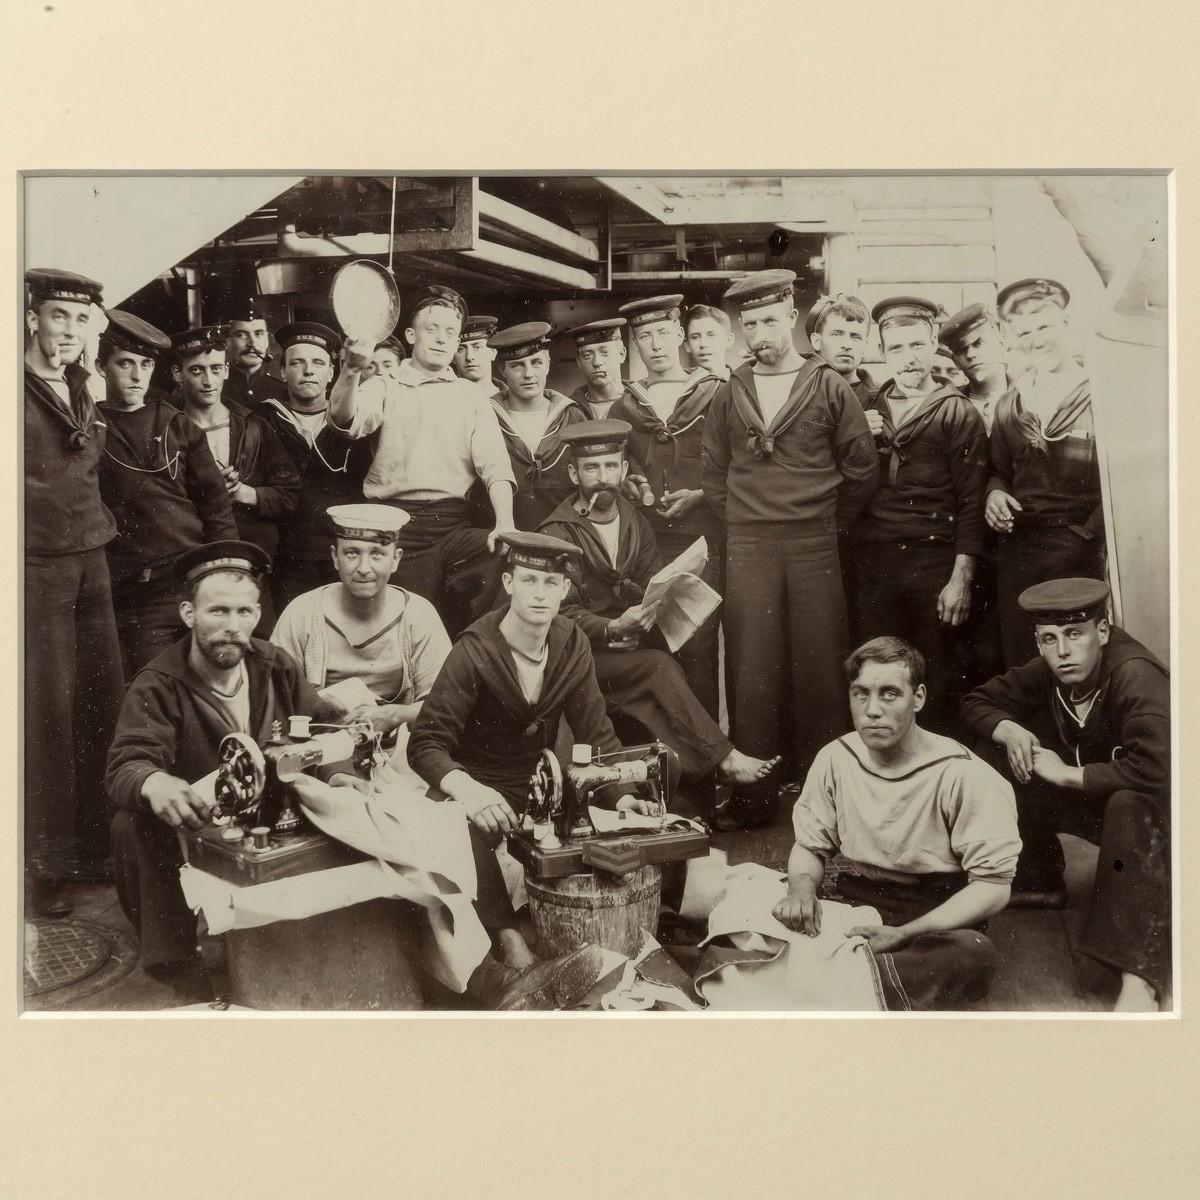 Eine gerahmte Gelatinefotografie der Besatzung der HMS Dido an Deck,
um 1880.